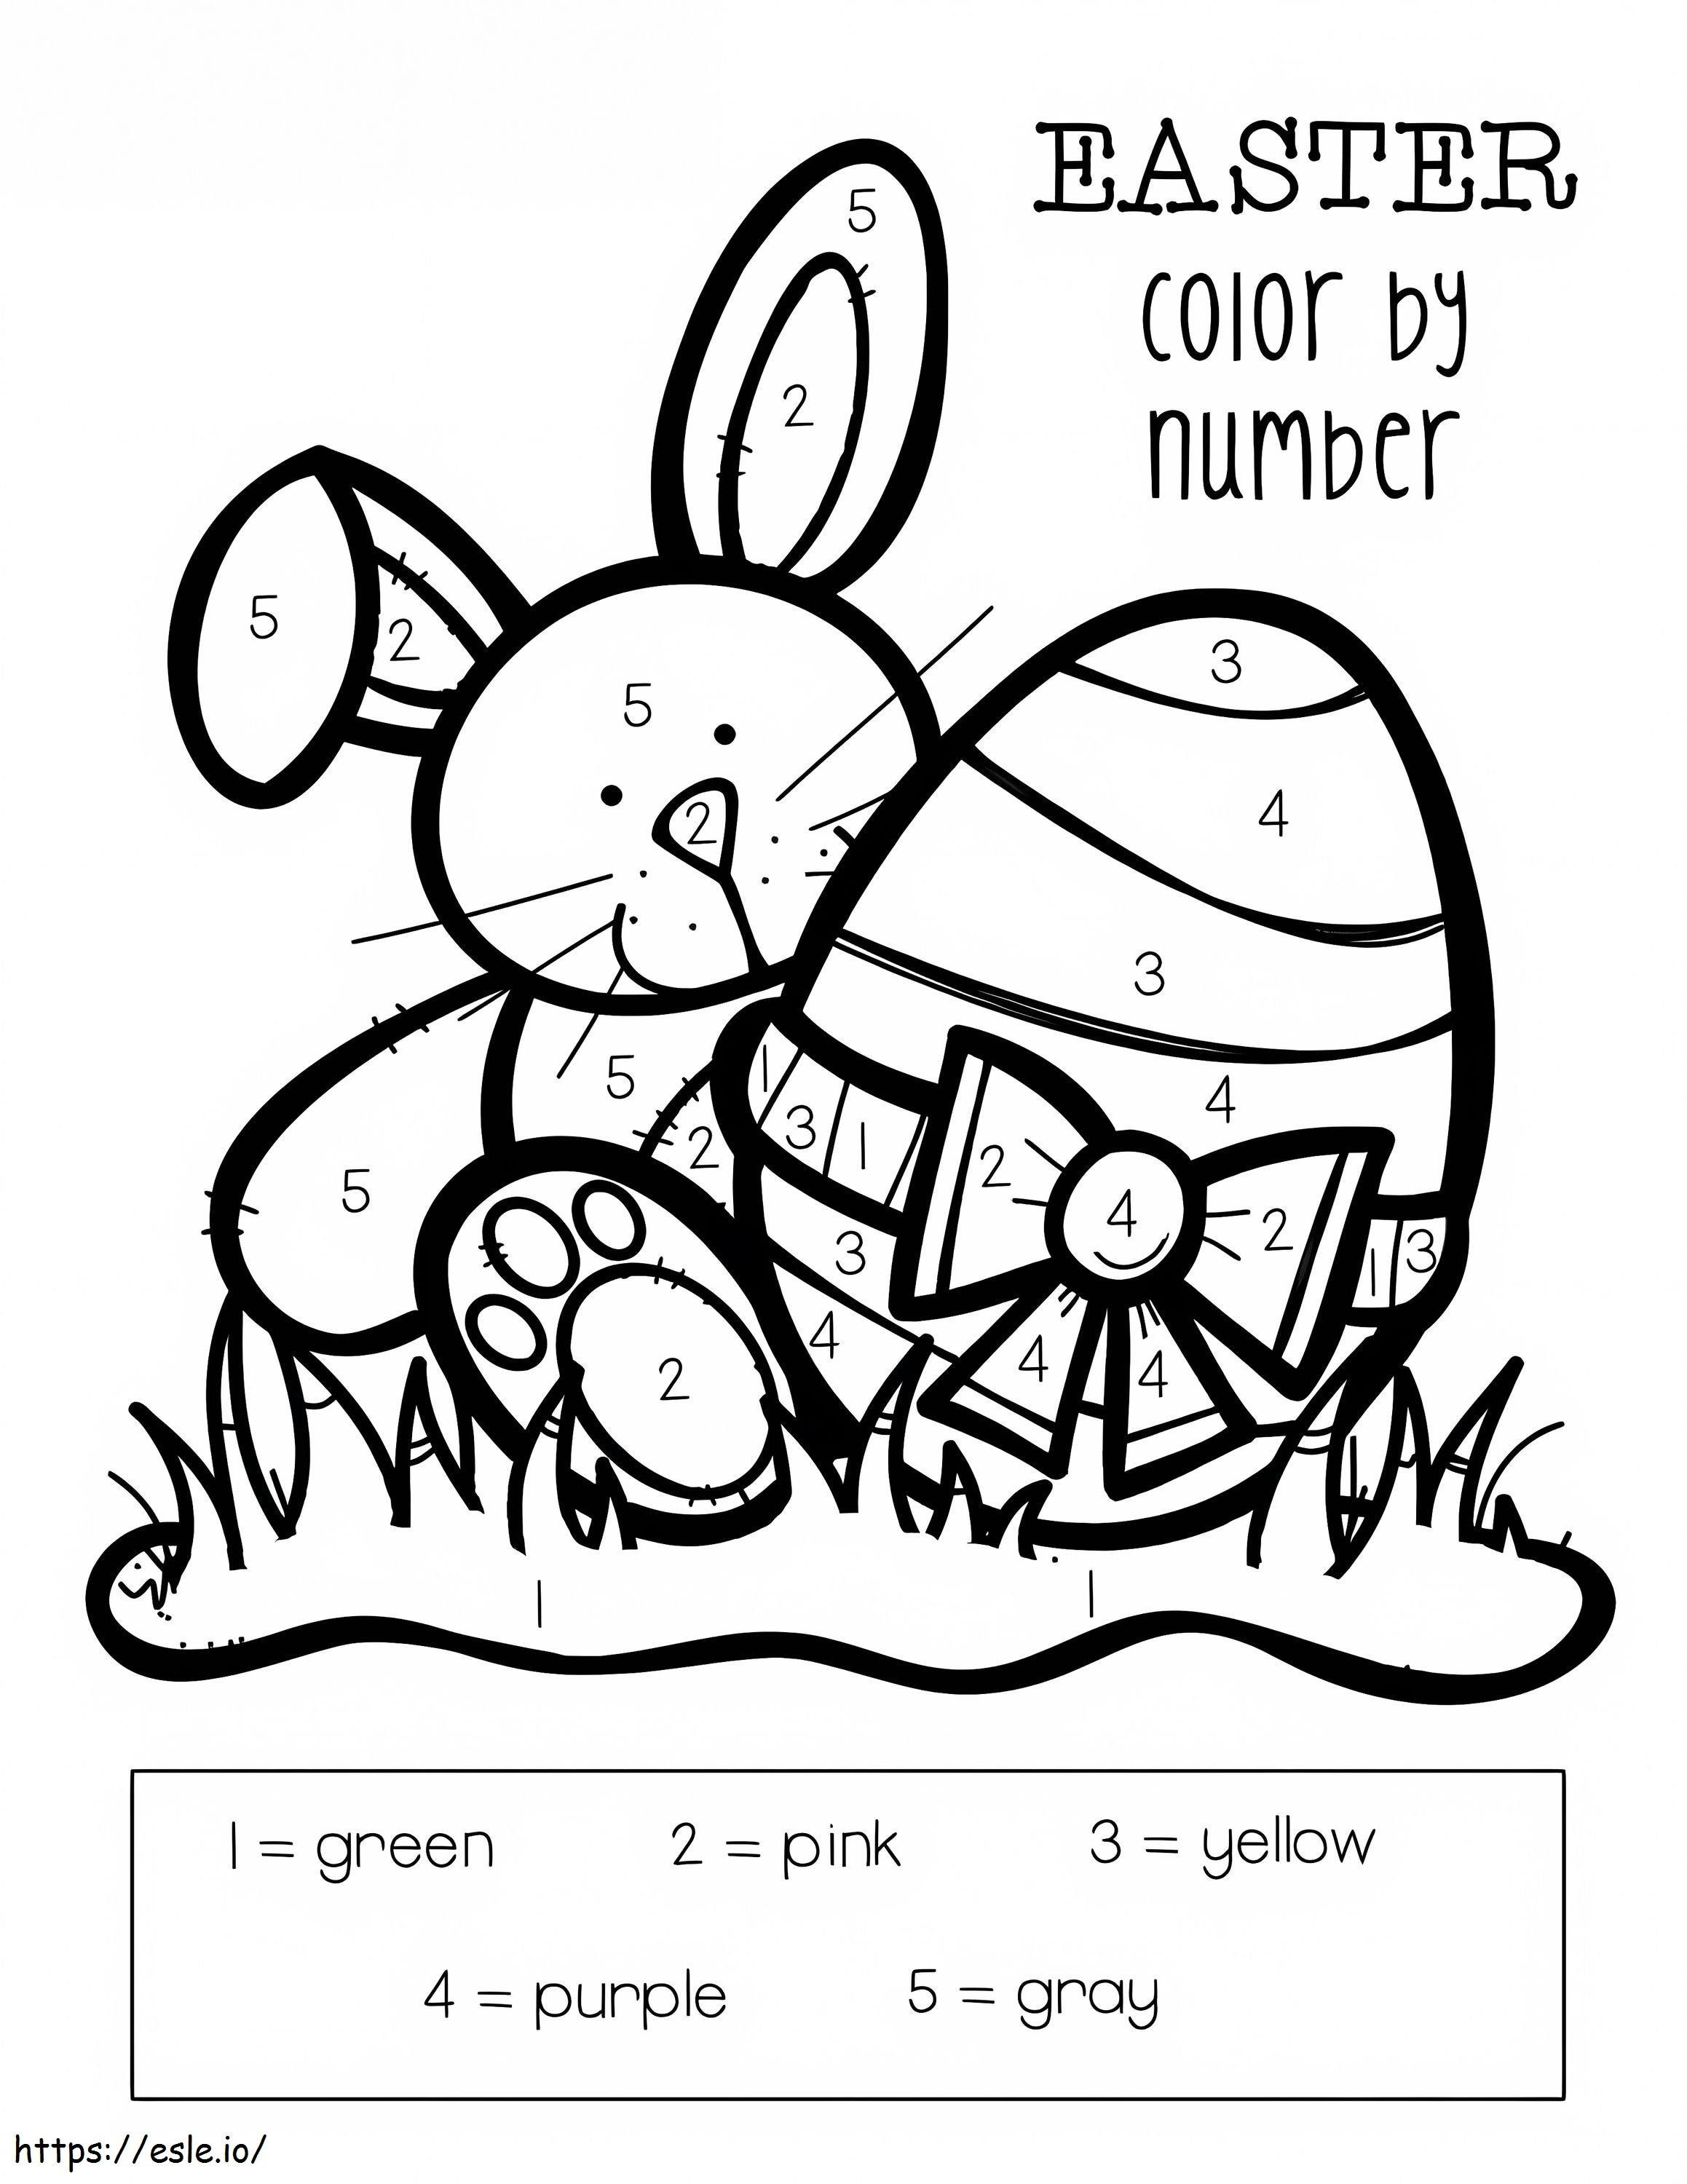 Colorear por números el huevo y el conejo de Pascua para colorear